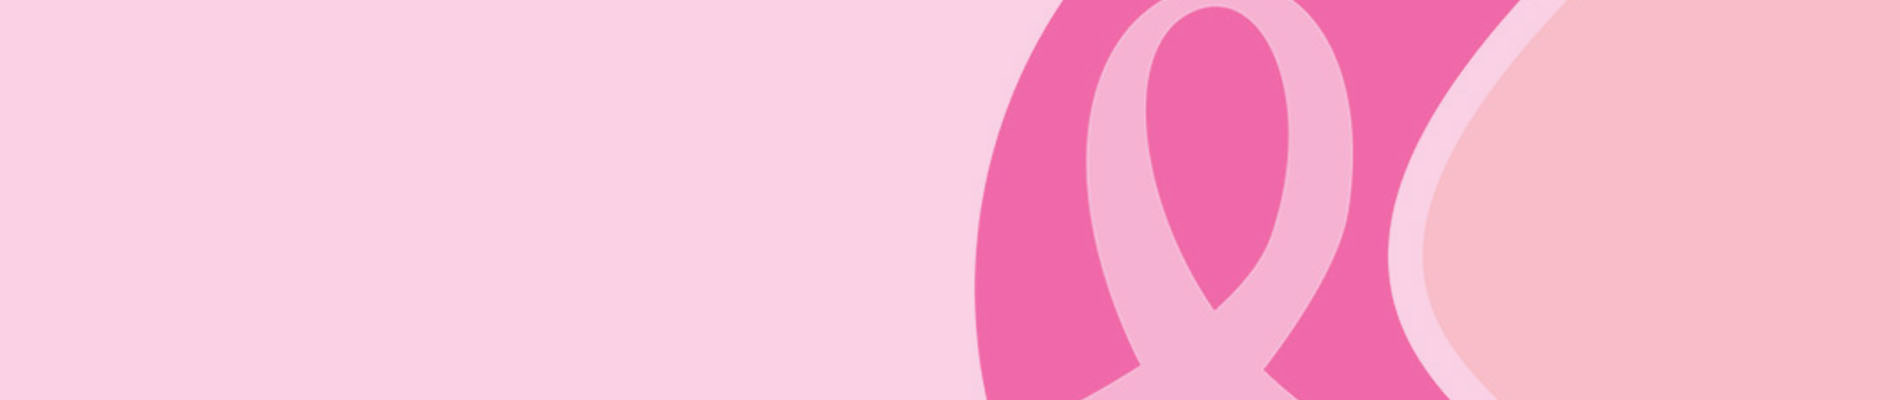 乳癌診療ガイドライン 1治療編 2018年版